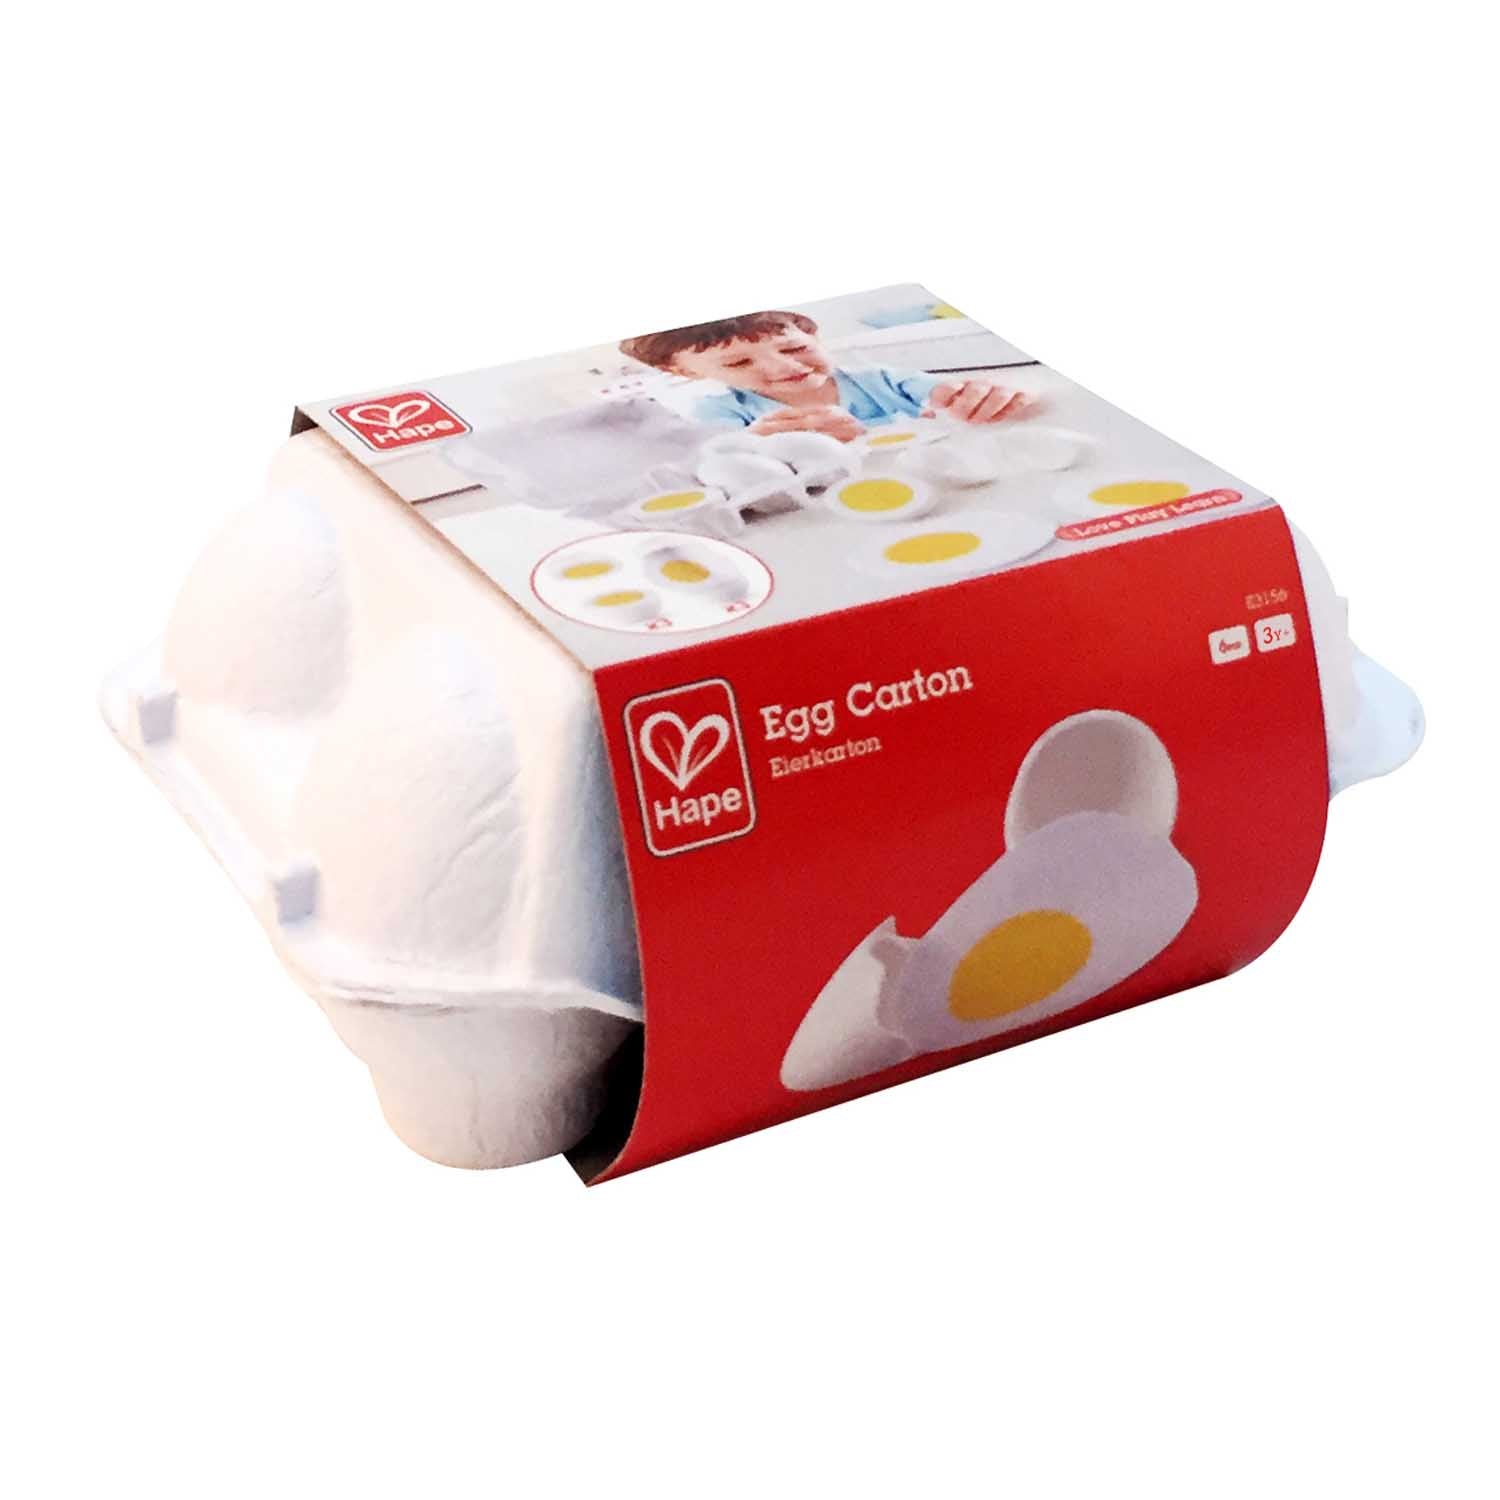 Egg Carton Kaboodles Toy Store - Victoria